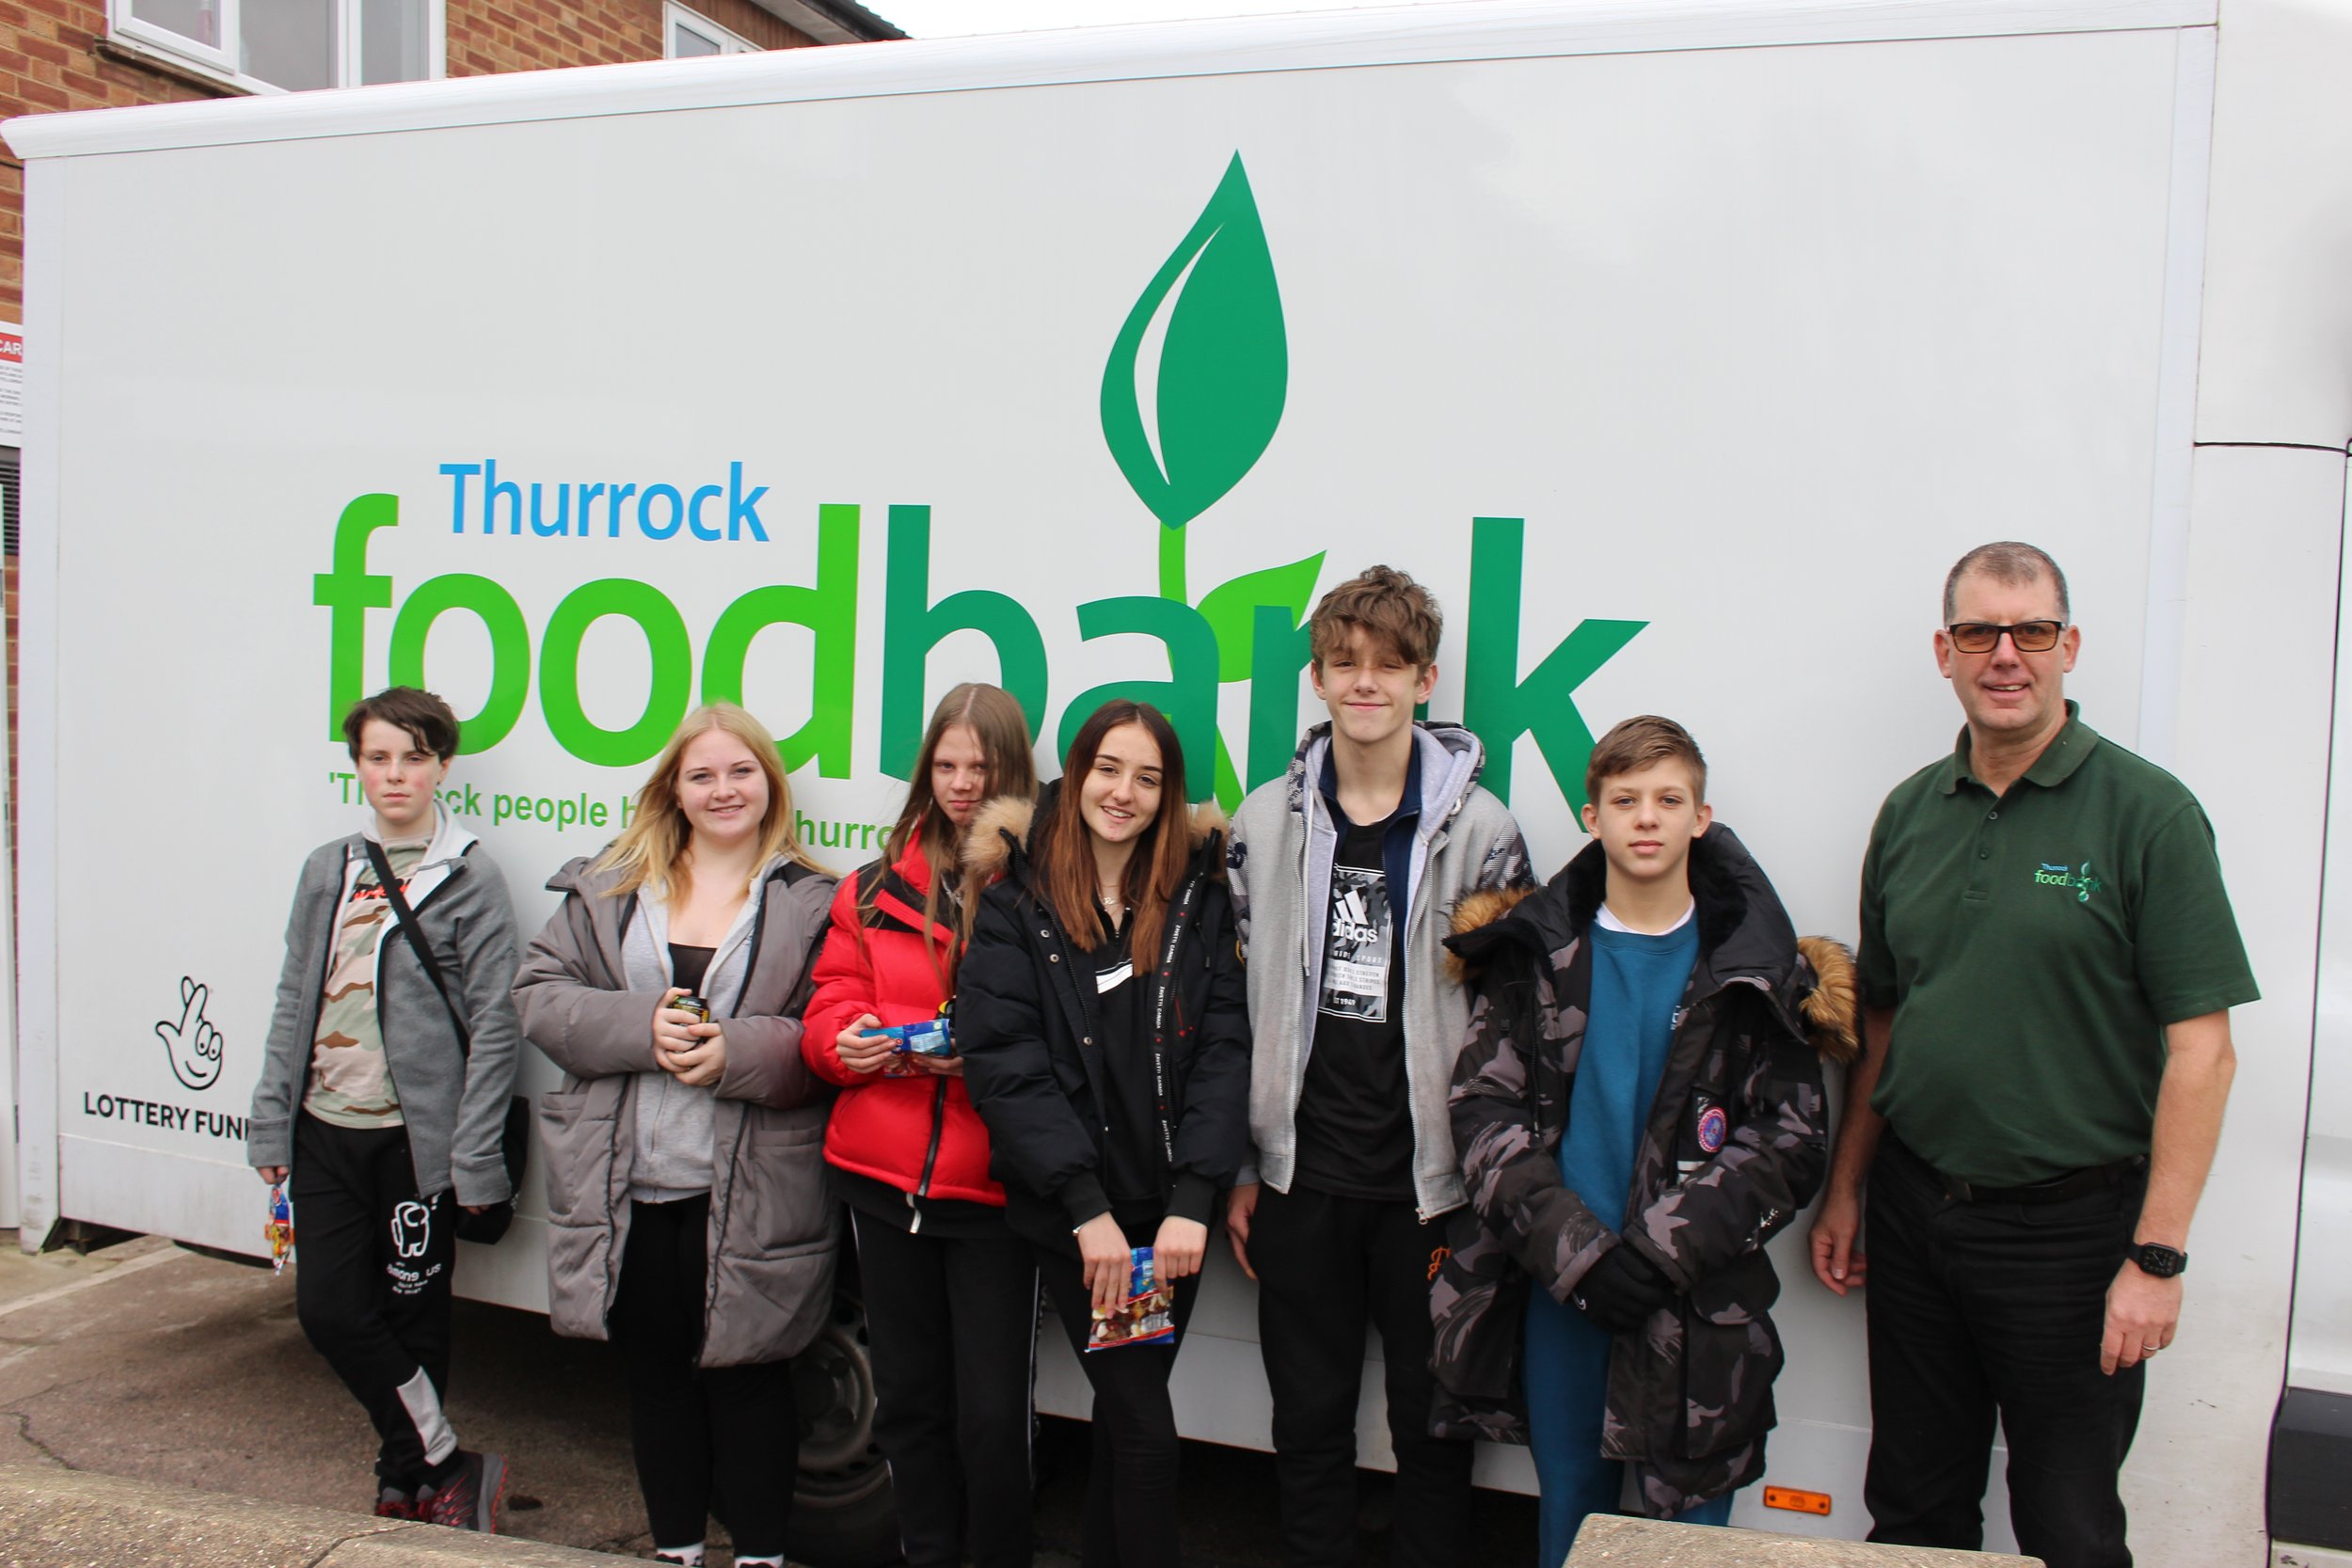 Week 1: Thurrock Foodbank